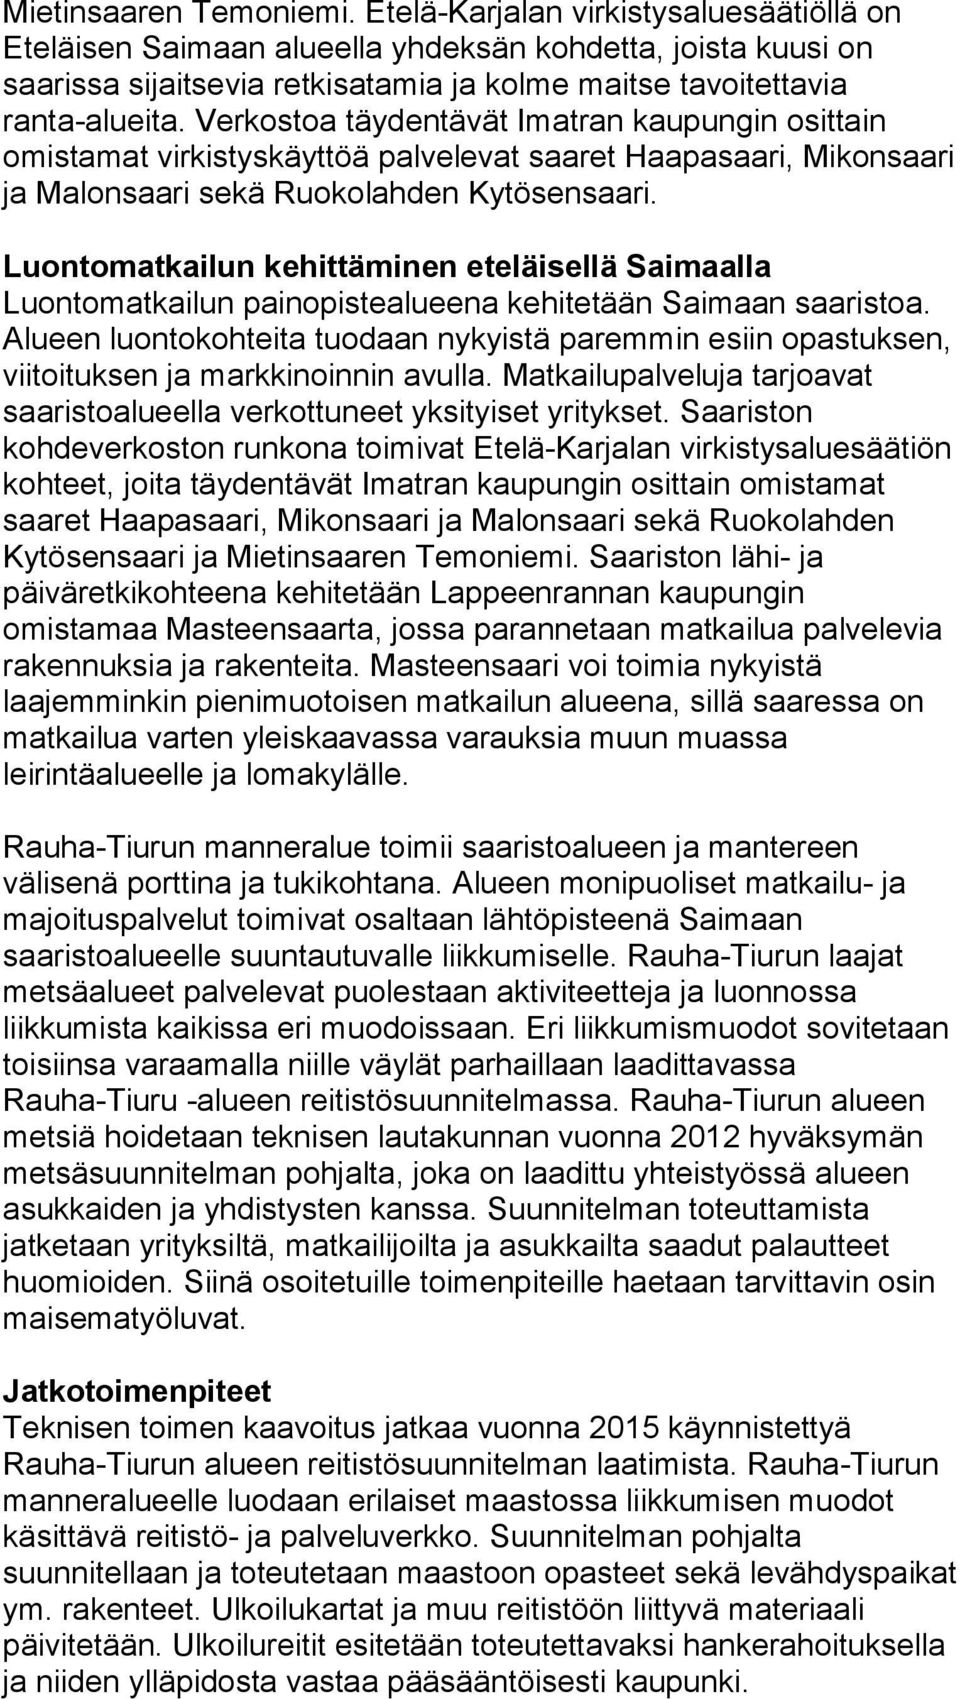 Verkostoa täydentävät Imatran kaupungin osittain omistamat virkistyskäyttöä palvelevat saaret Haapasaari, Mikonsaari ja Malonsaari sekä Ruokolahden Kytösensaari.